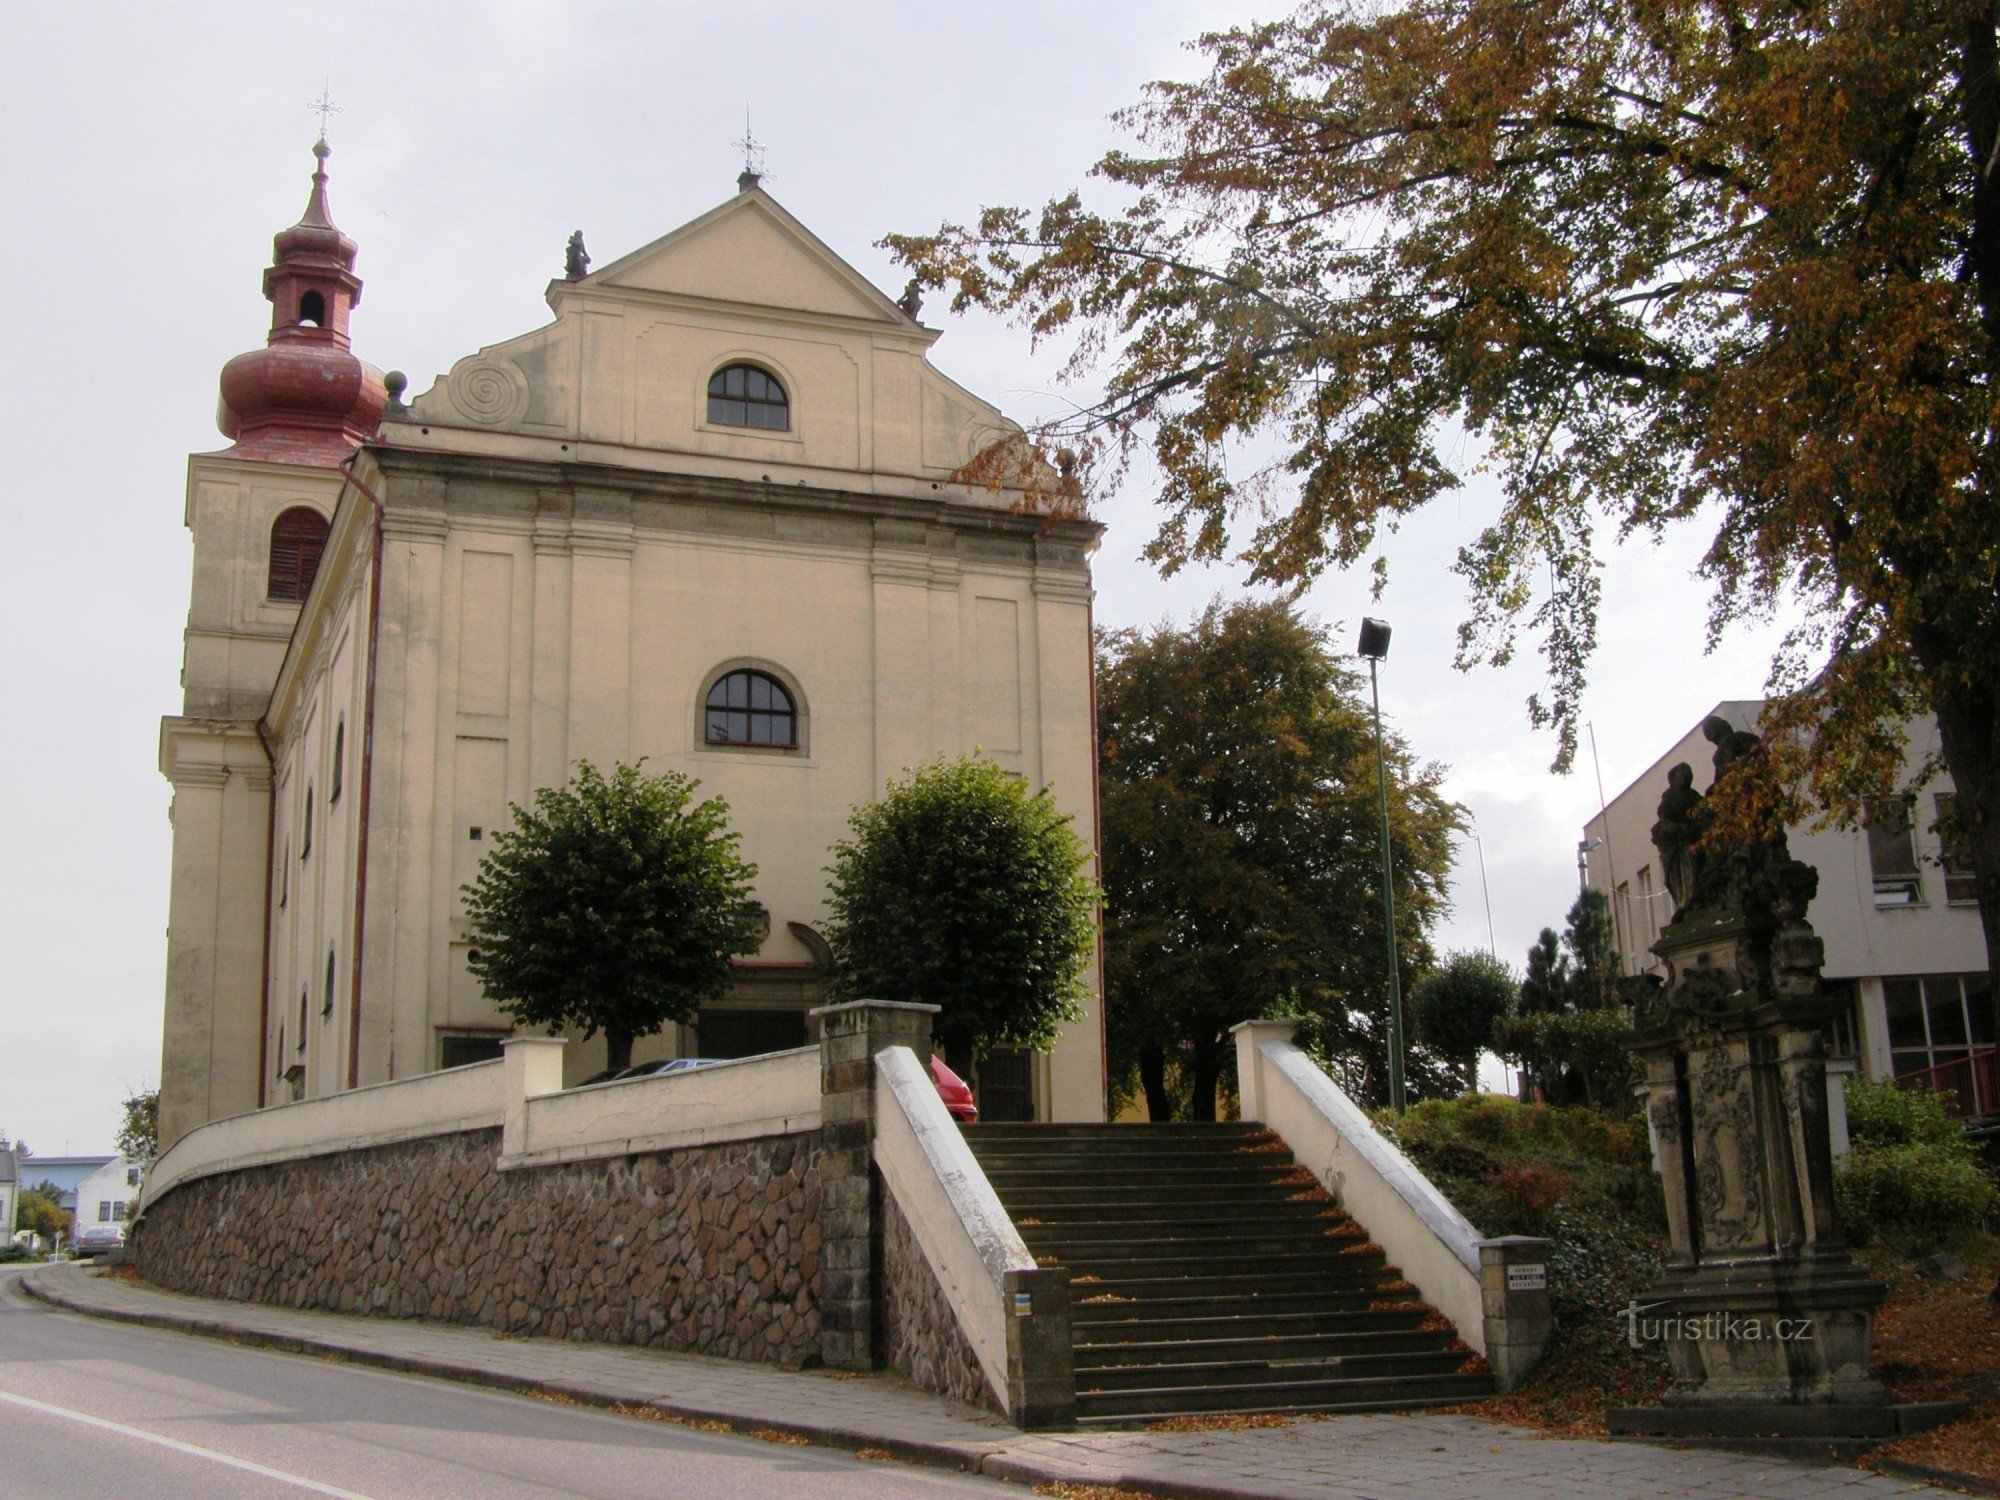 Vamberk - Church of St. Procopius